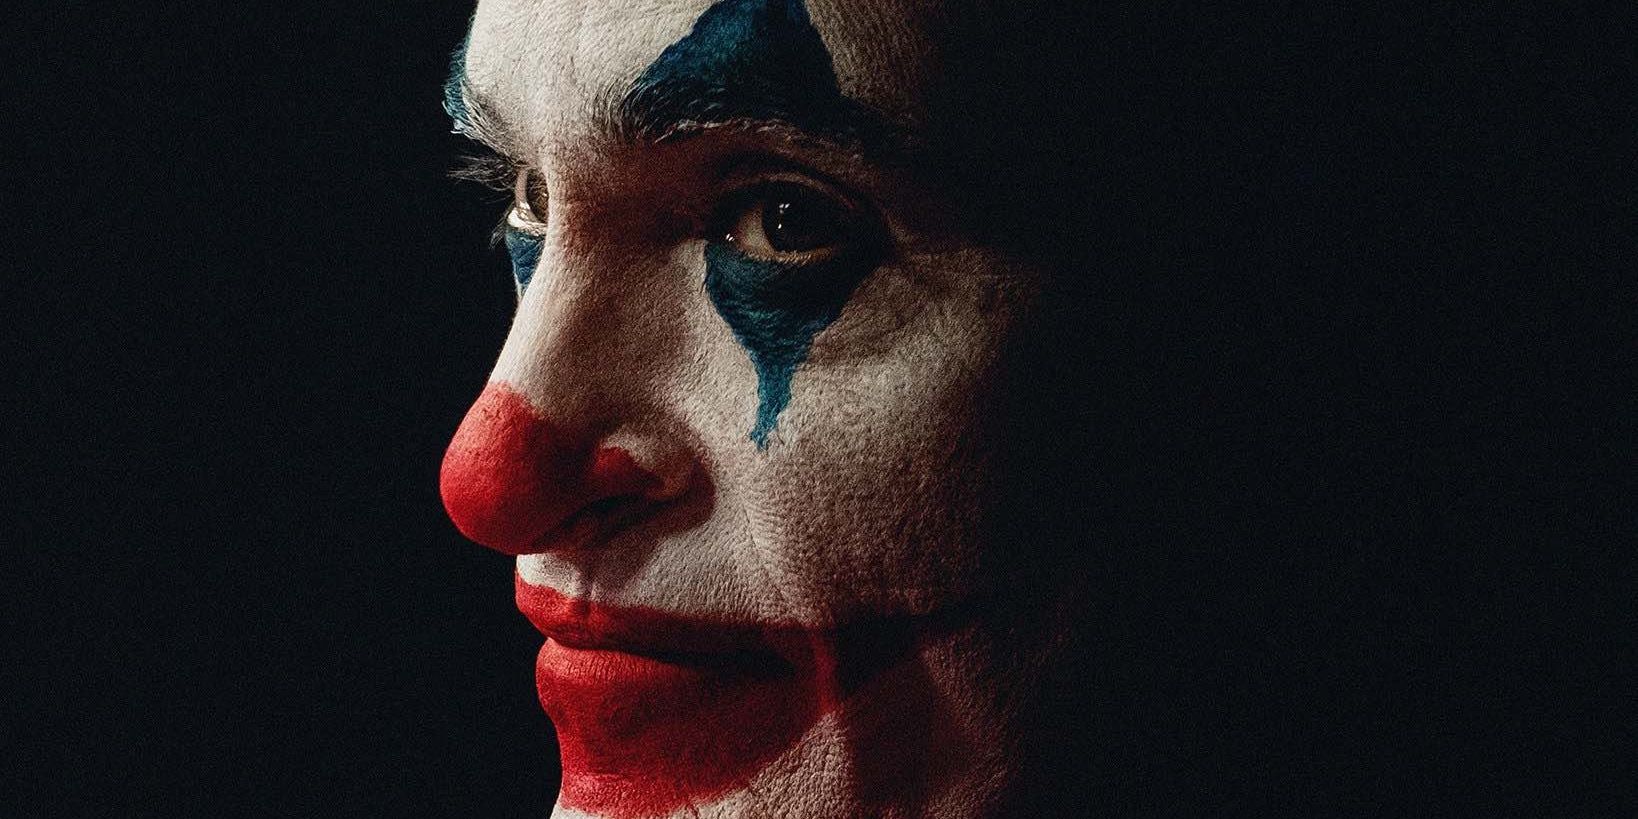 Joker Movie Fandango Poster Cropped